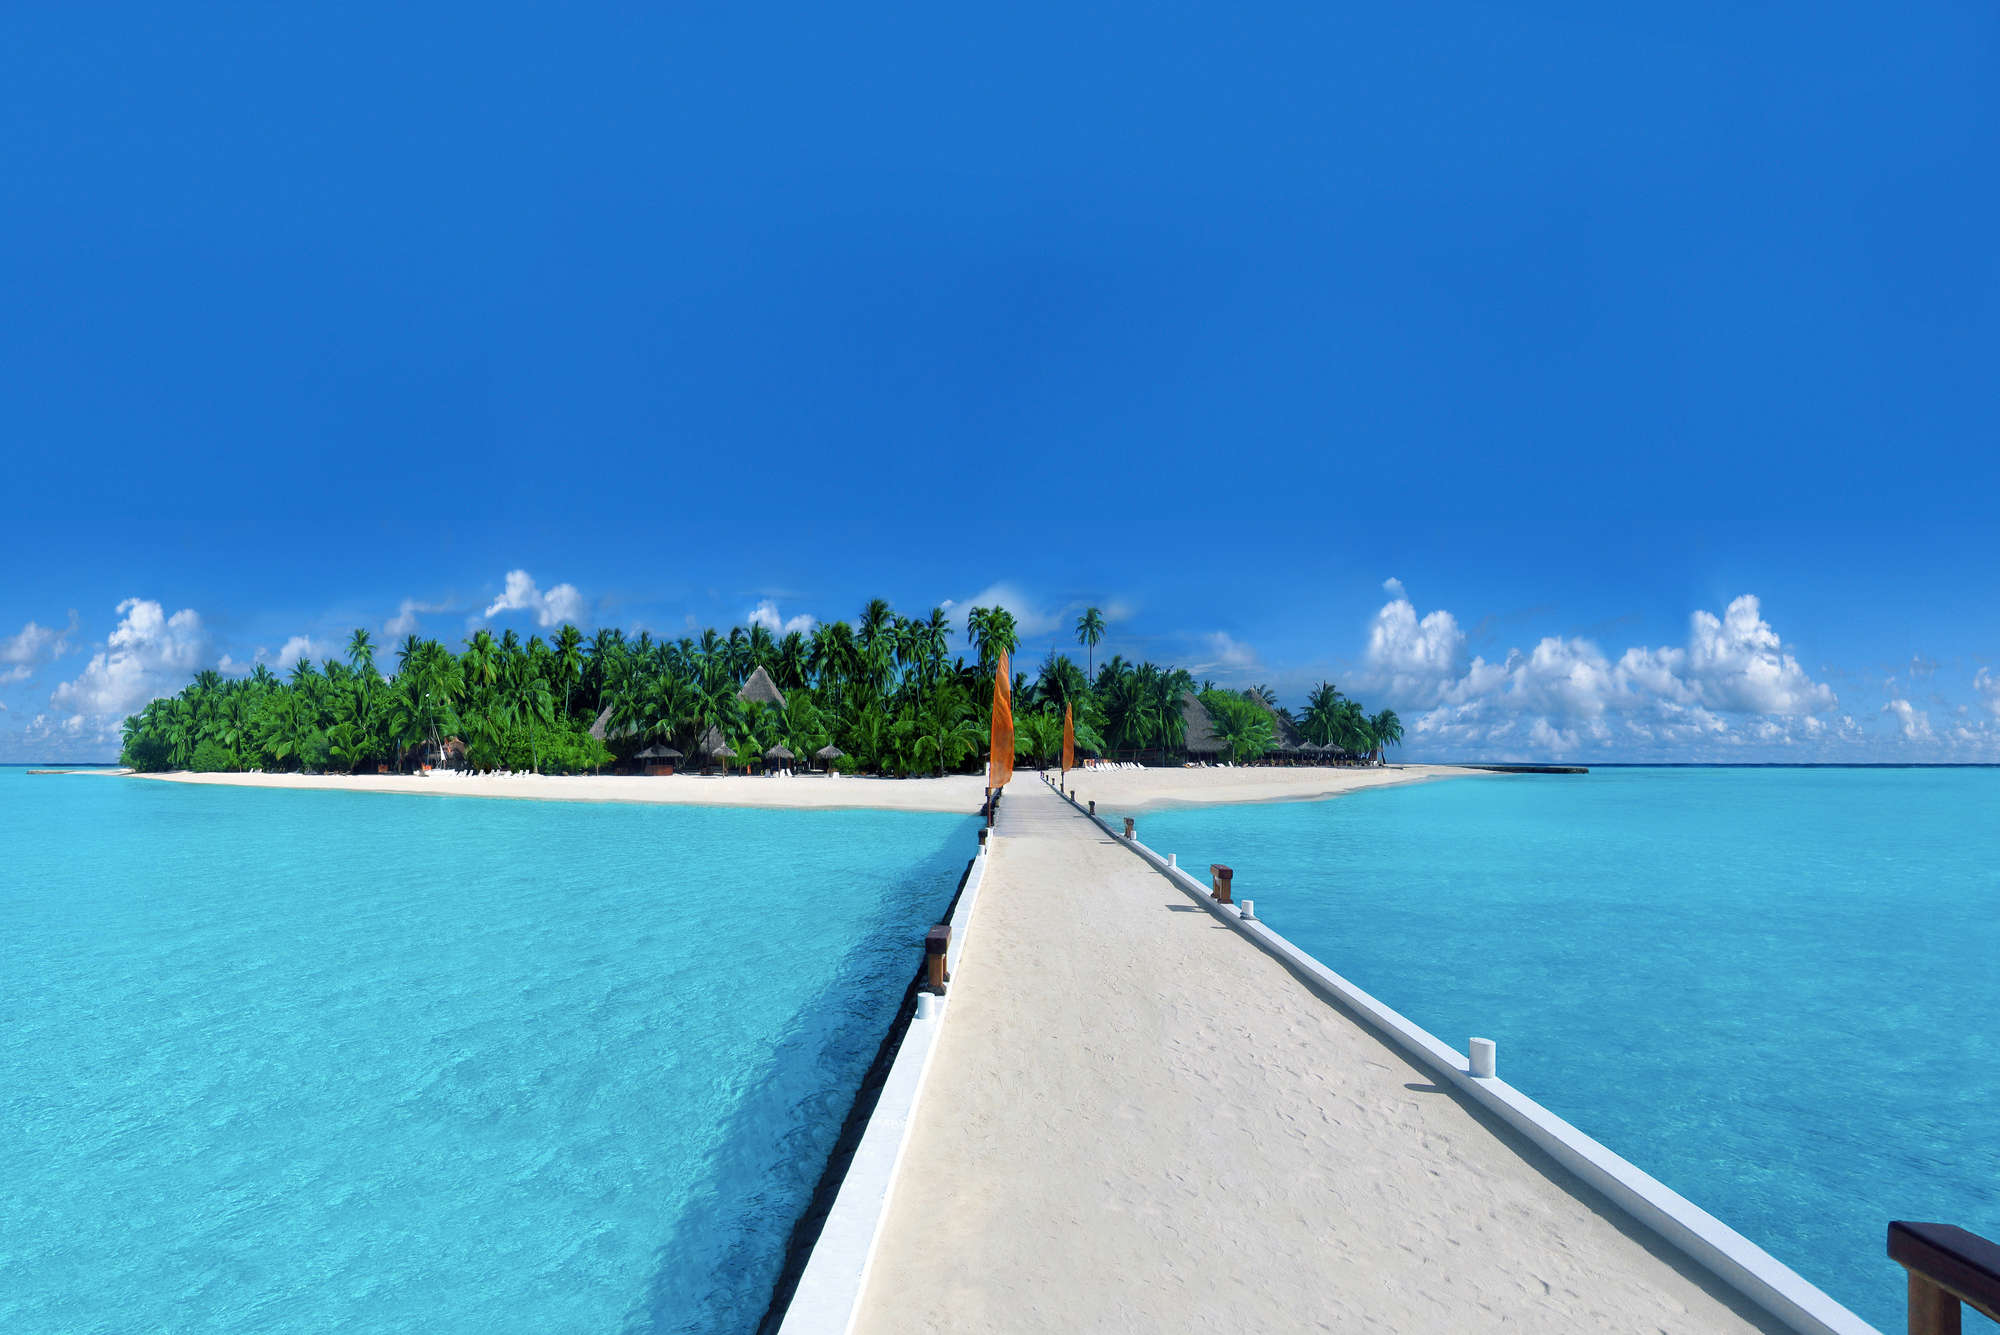             Fototapete Insel mit Steg zum Strand – Premium Glattvlies
        